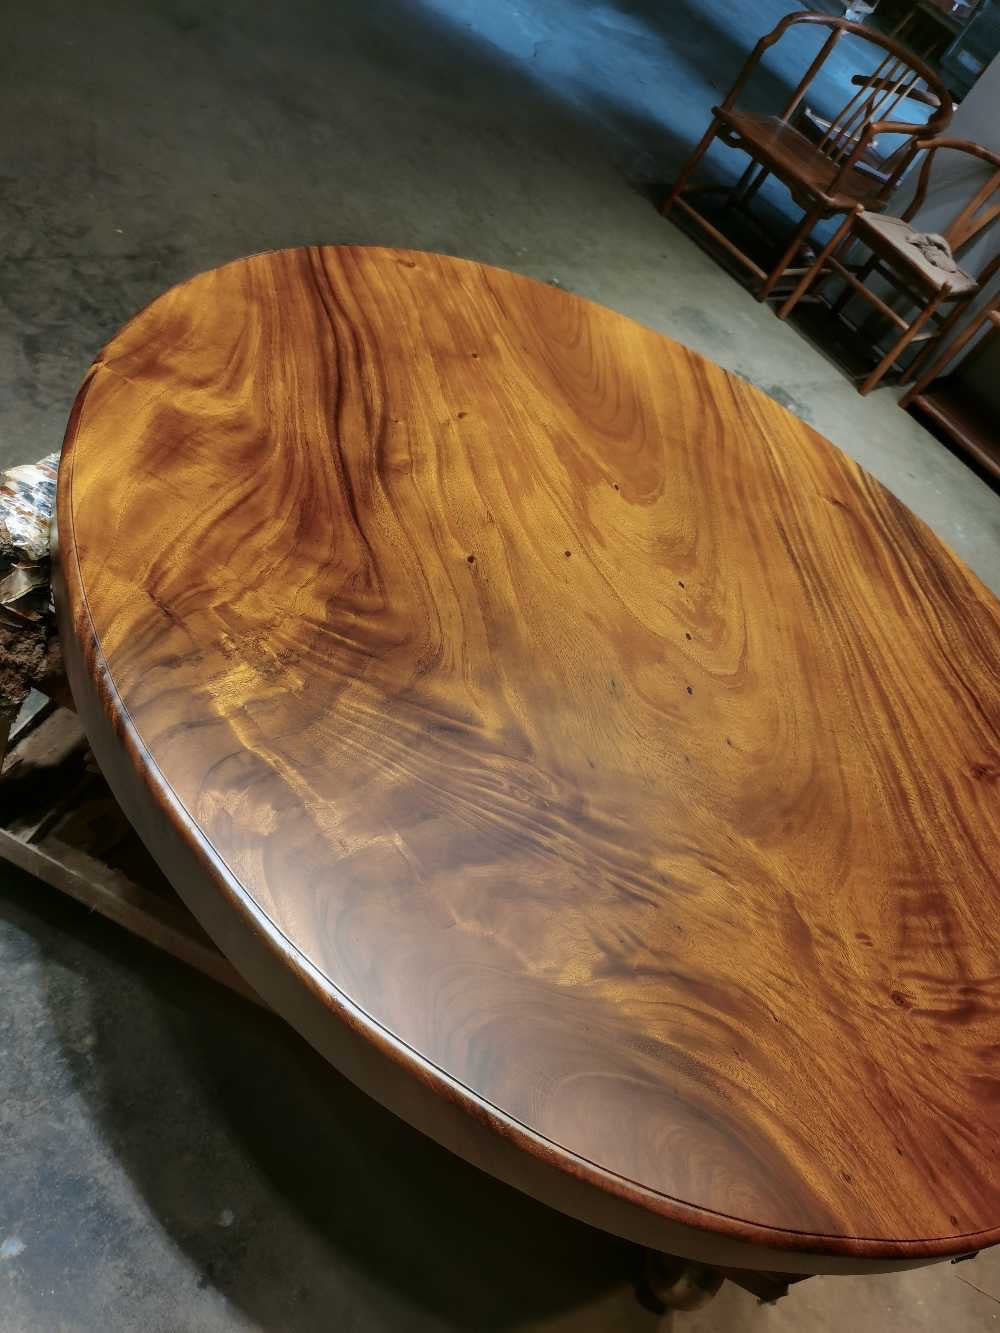 Runder Tisch aus rohem Holz, runder Tisch aus nicht Eichenholz, runde Tischplatten aus unlackiertem Holz, runder Tisch aus lebendem Kantenholz